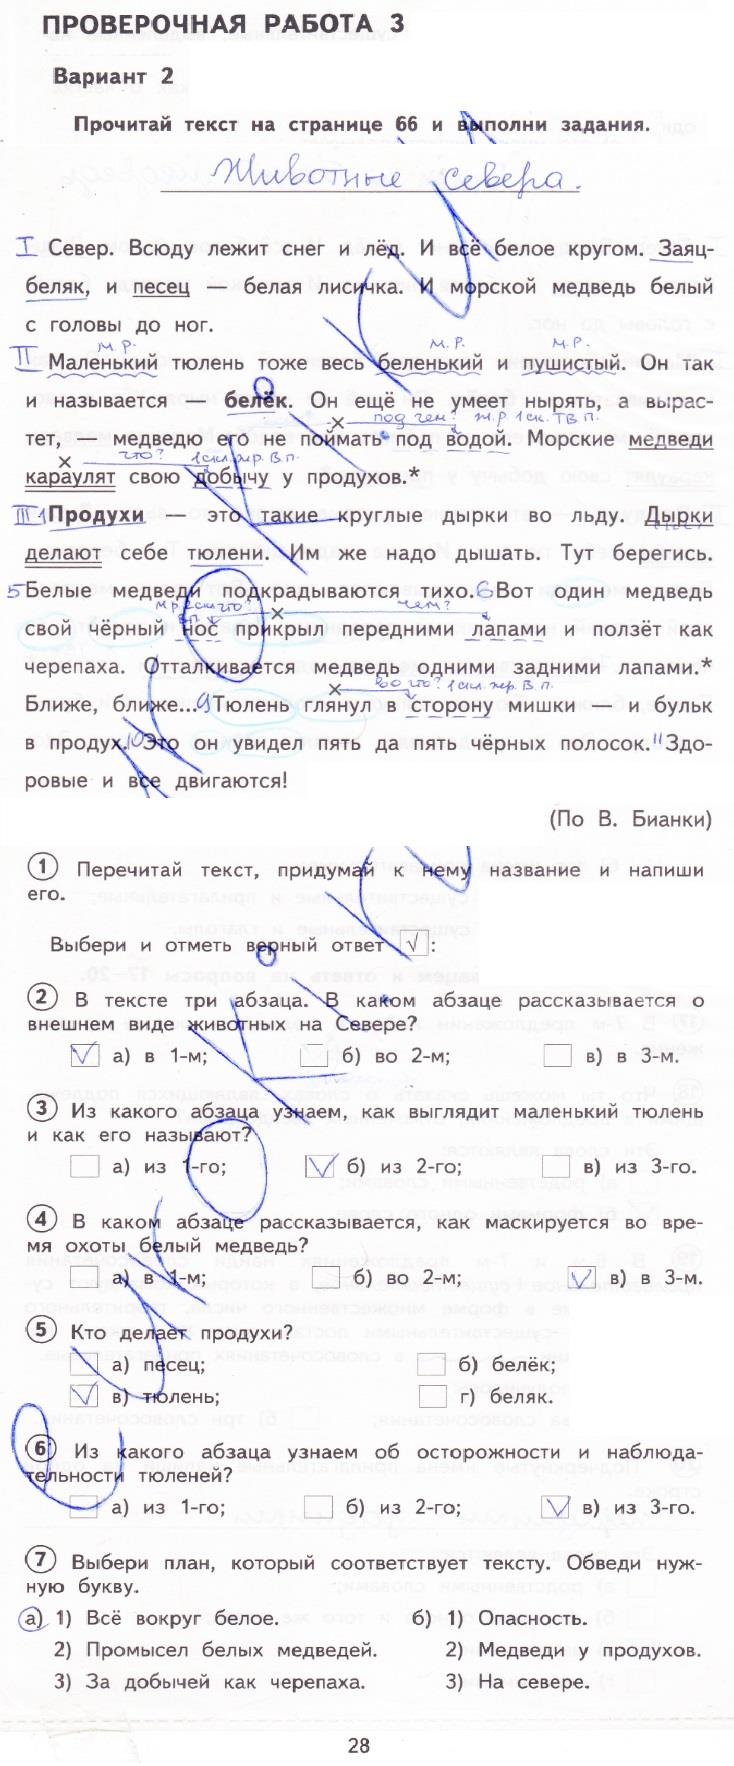 гдз 3 класс тетрадь для проверочных работ страница 28 русский язык Лаврова